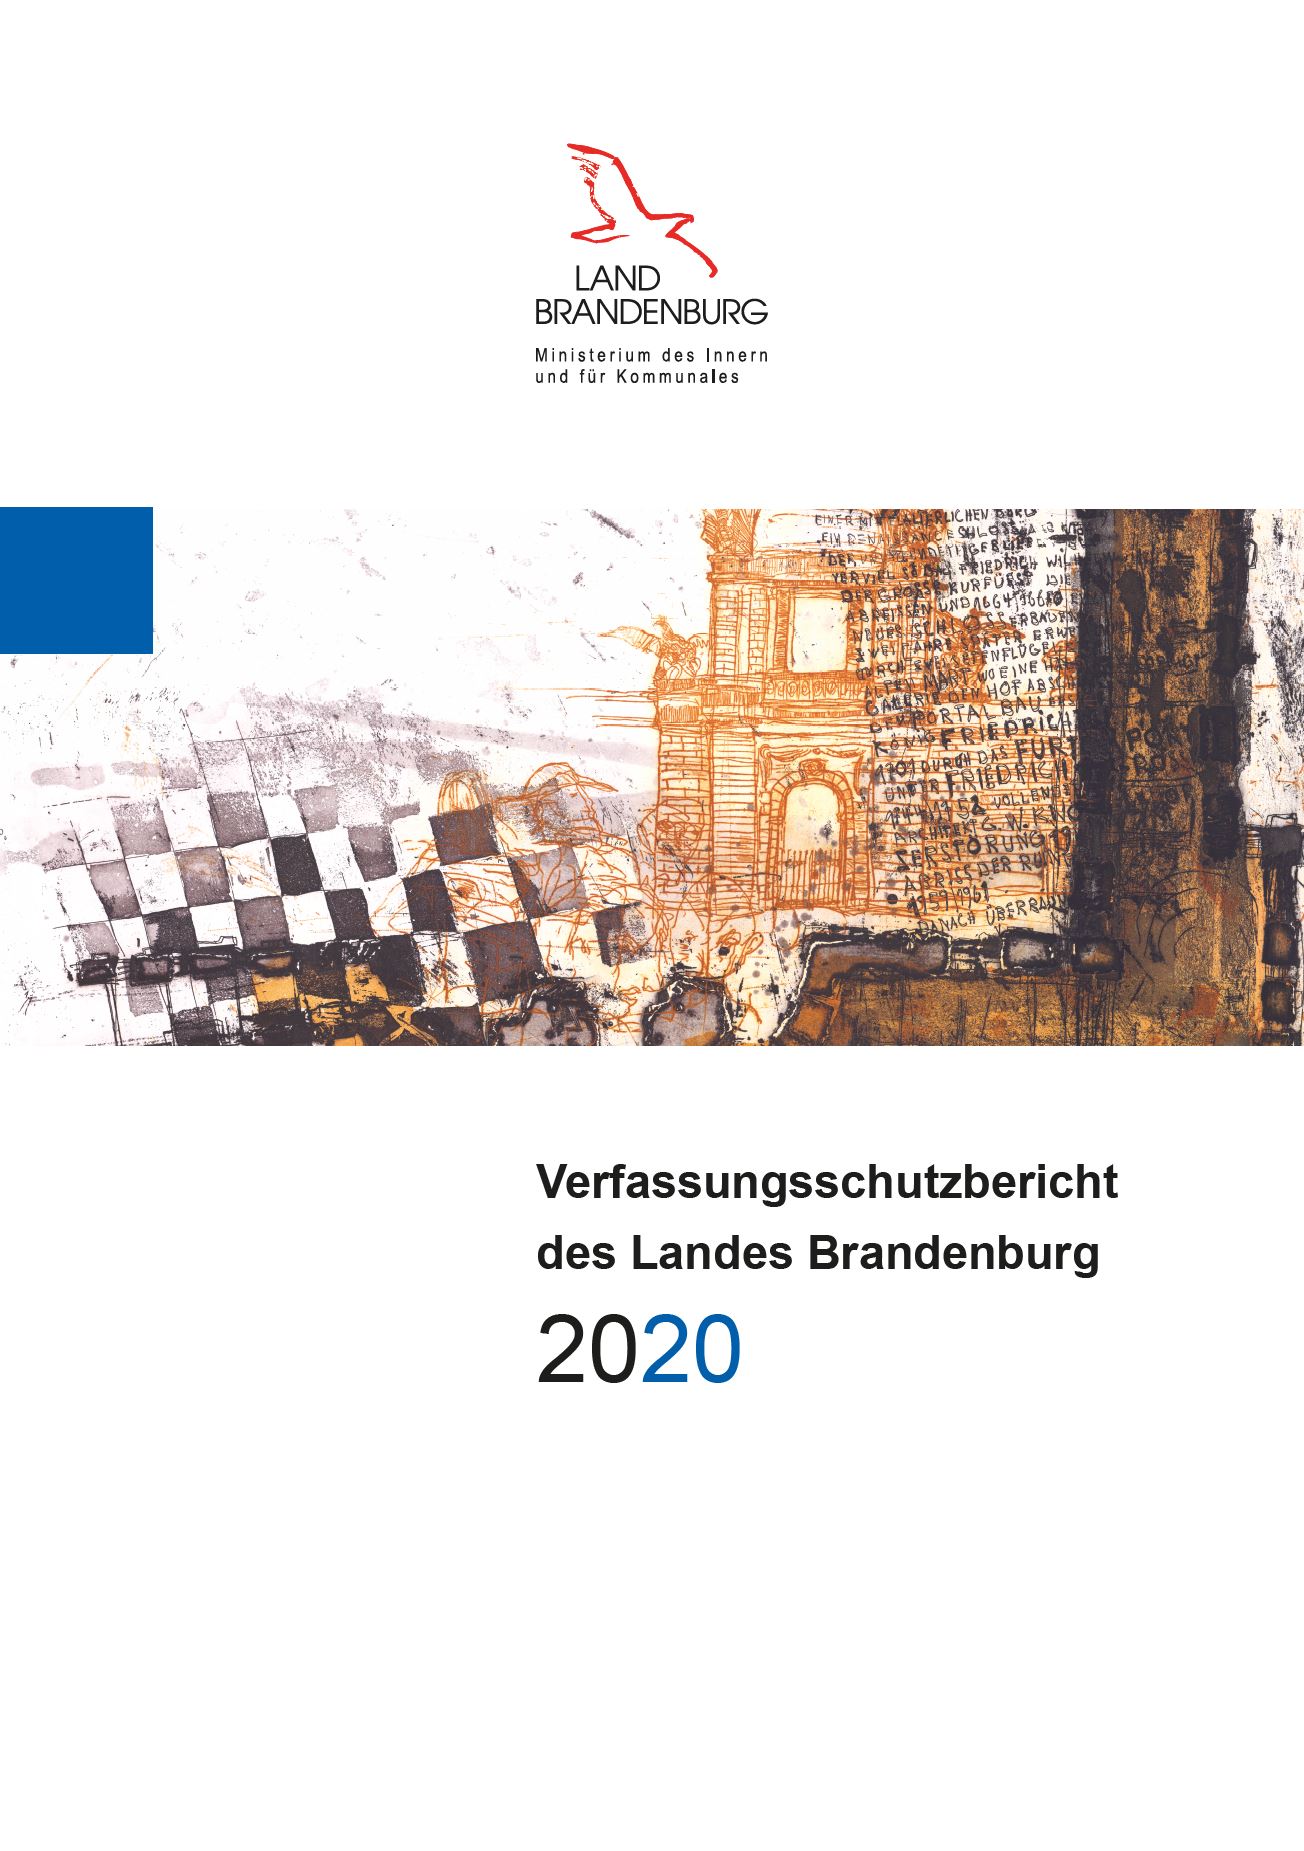 Bild vergrößern (Bild: Vorschaubild der Titelseite vom Verfassungsschutzbericht 2020)